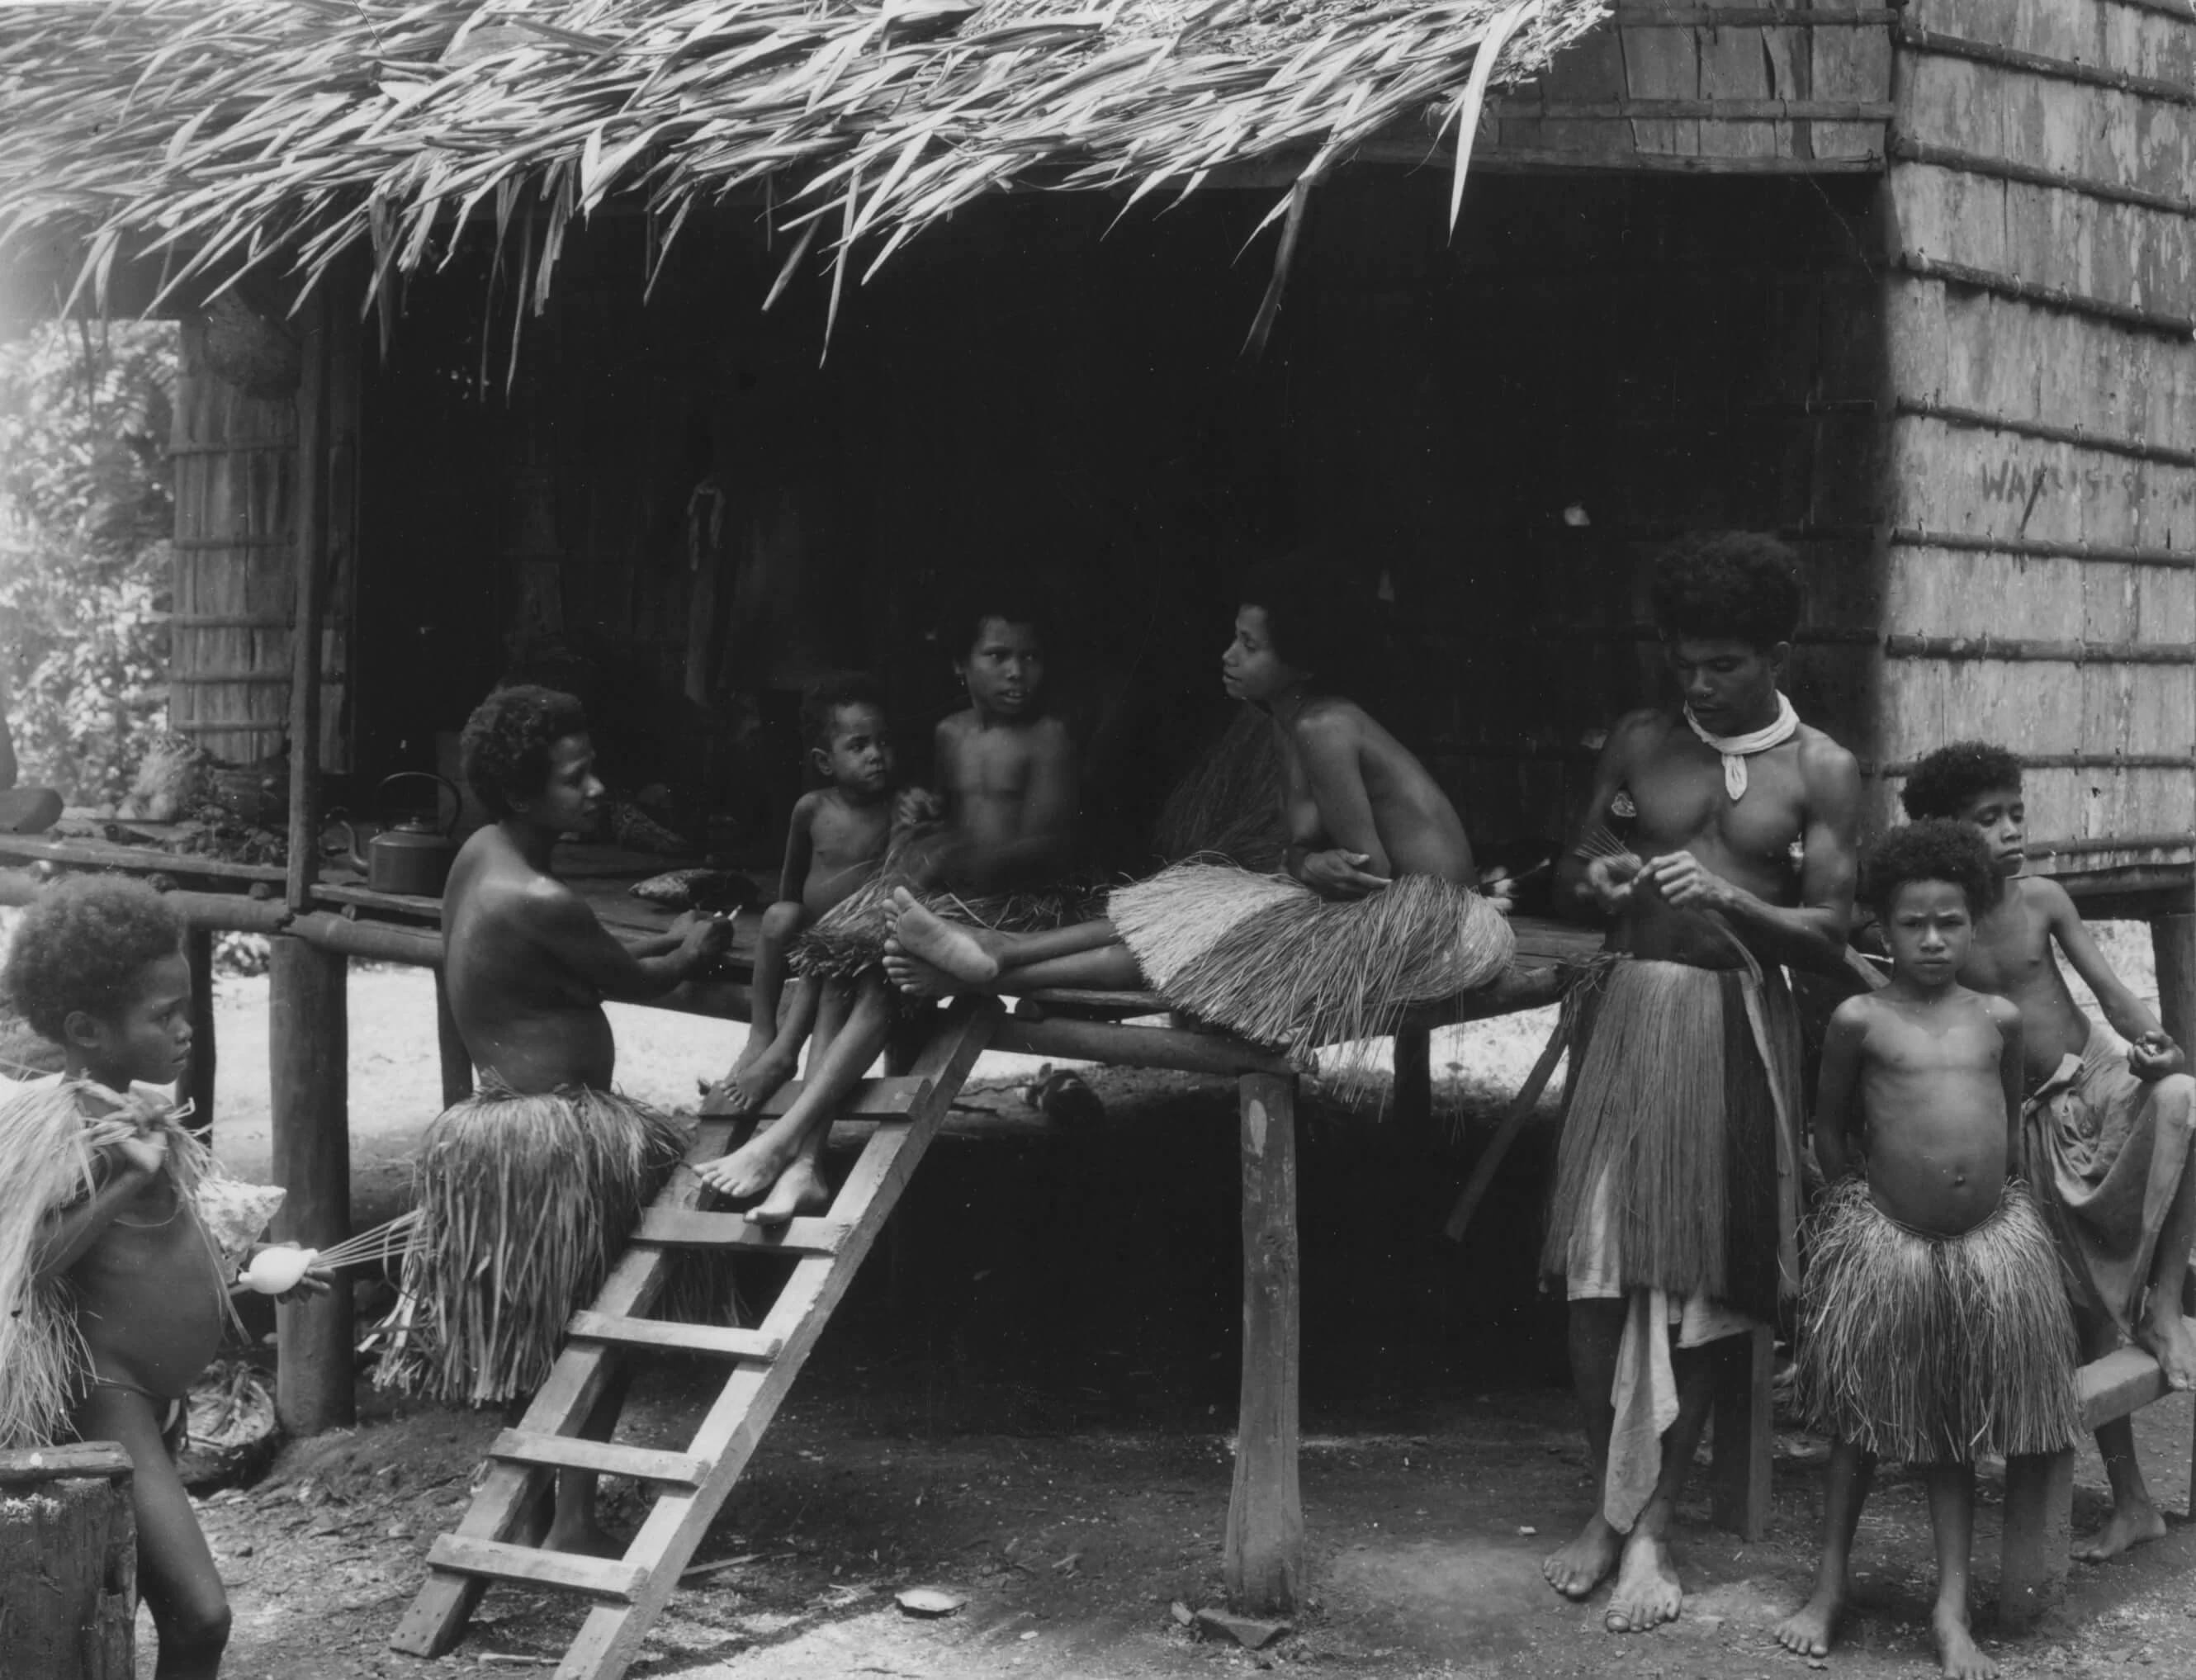 Samanai Island, New Guinea, 1943